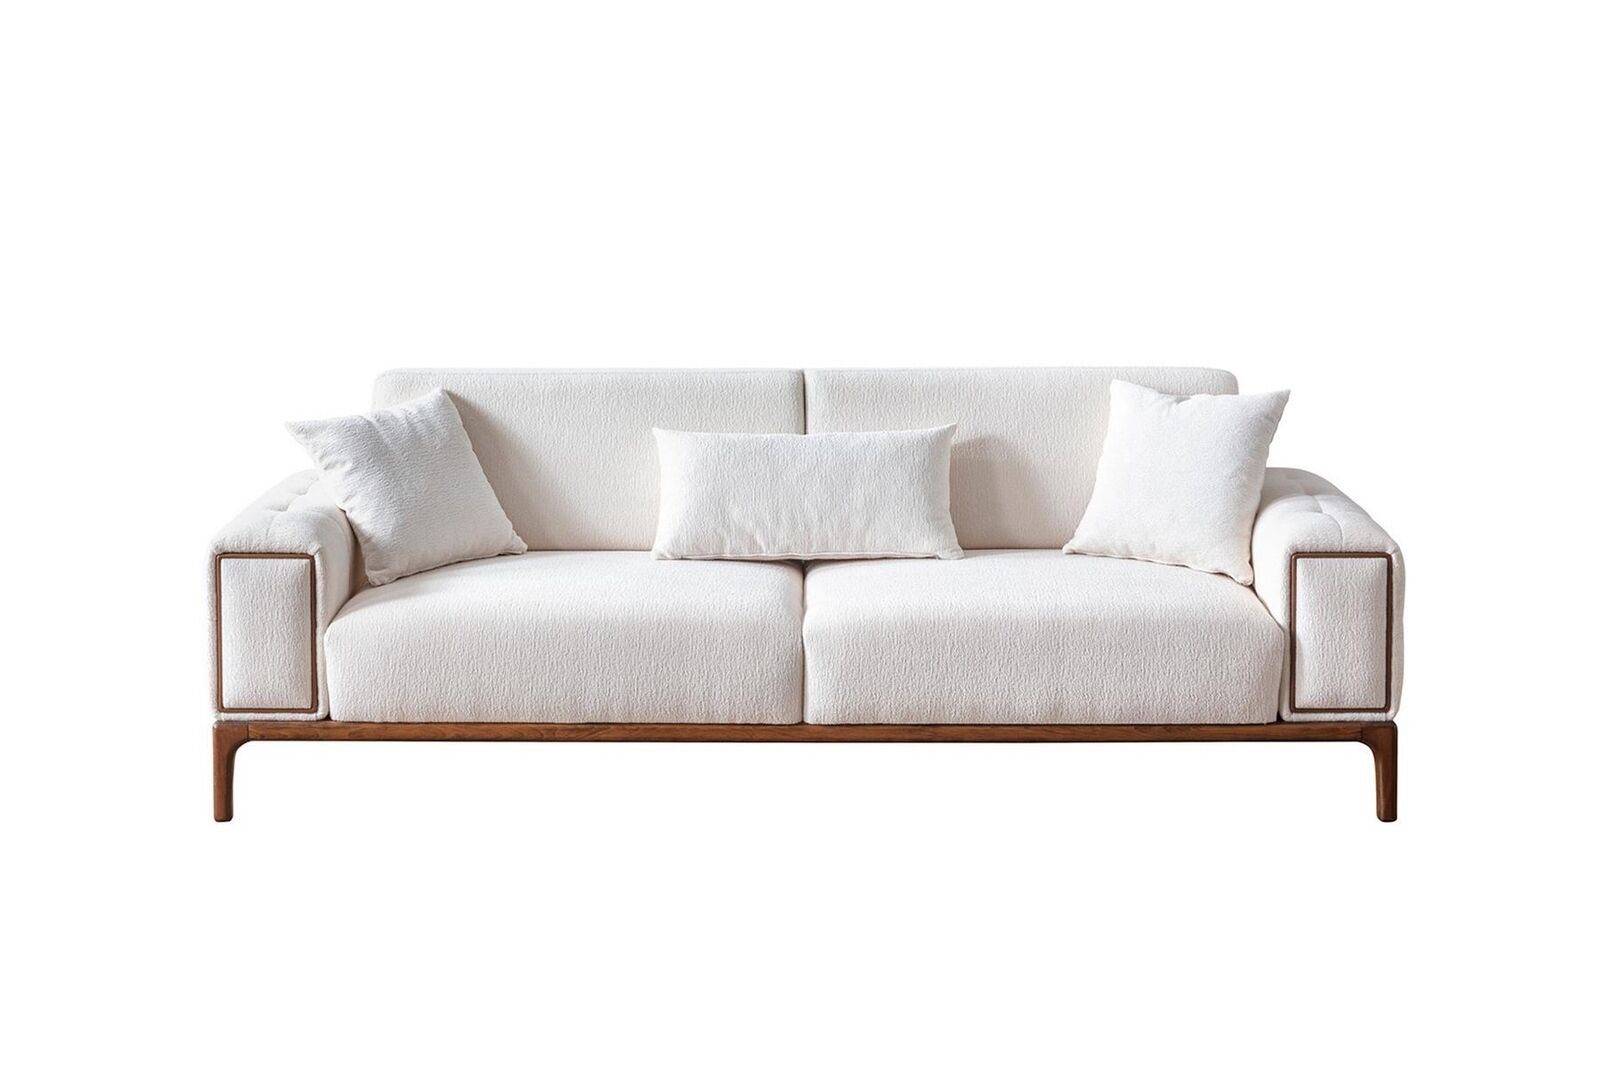 JVmoebel 3-Sitzer Sofa 3 Sitzer Modern Möbel Weiße Farbe Wohnzimmer Luxus Dreisitzer, 1 Teile, Made in Europa